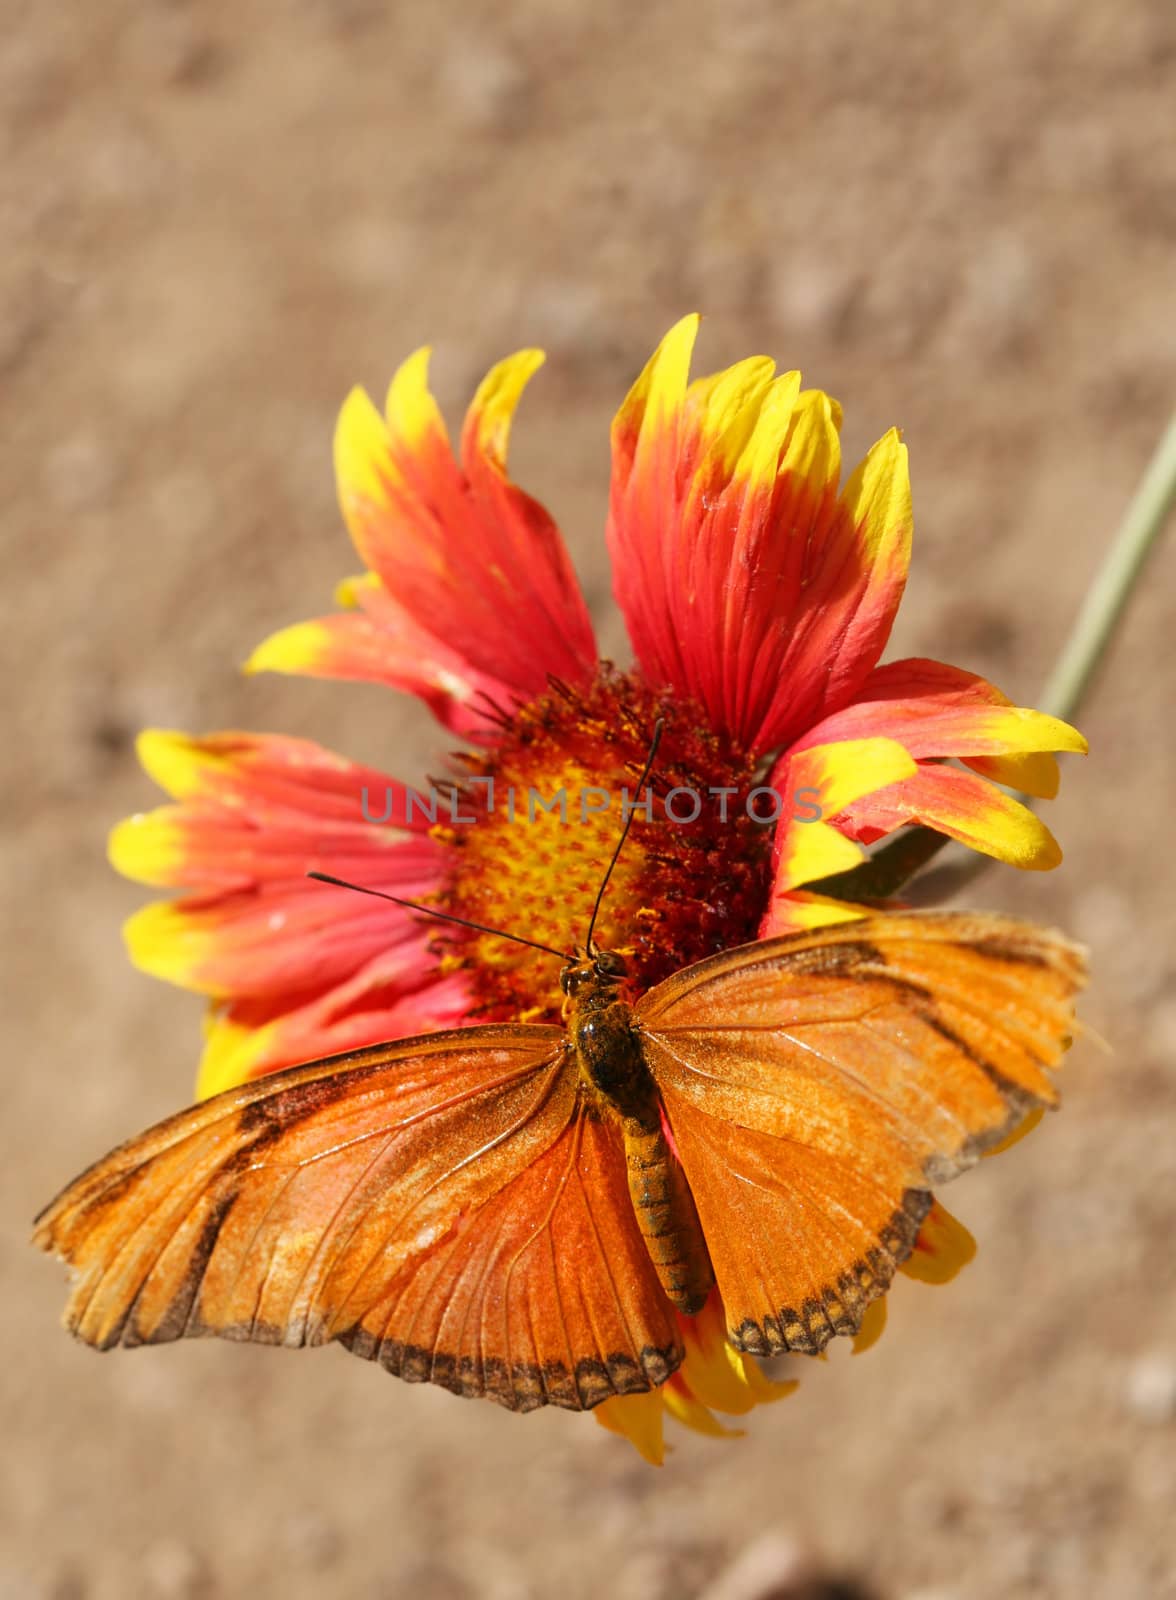 A Julia Longwing Butterfly on a flower